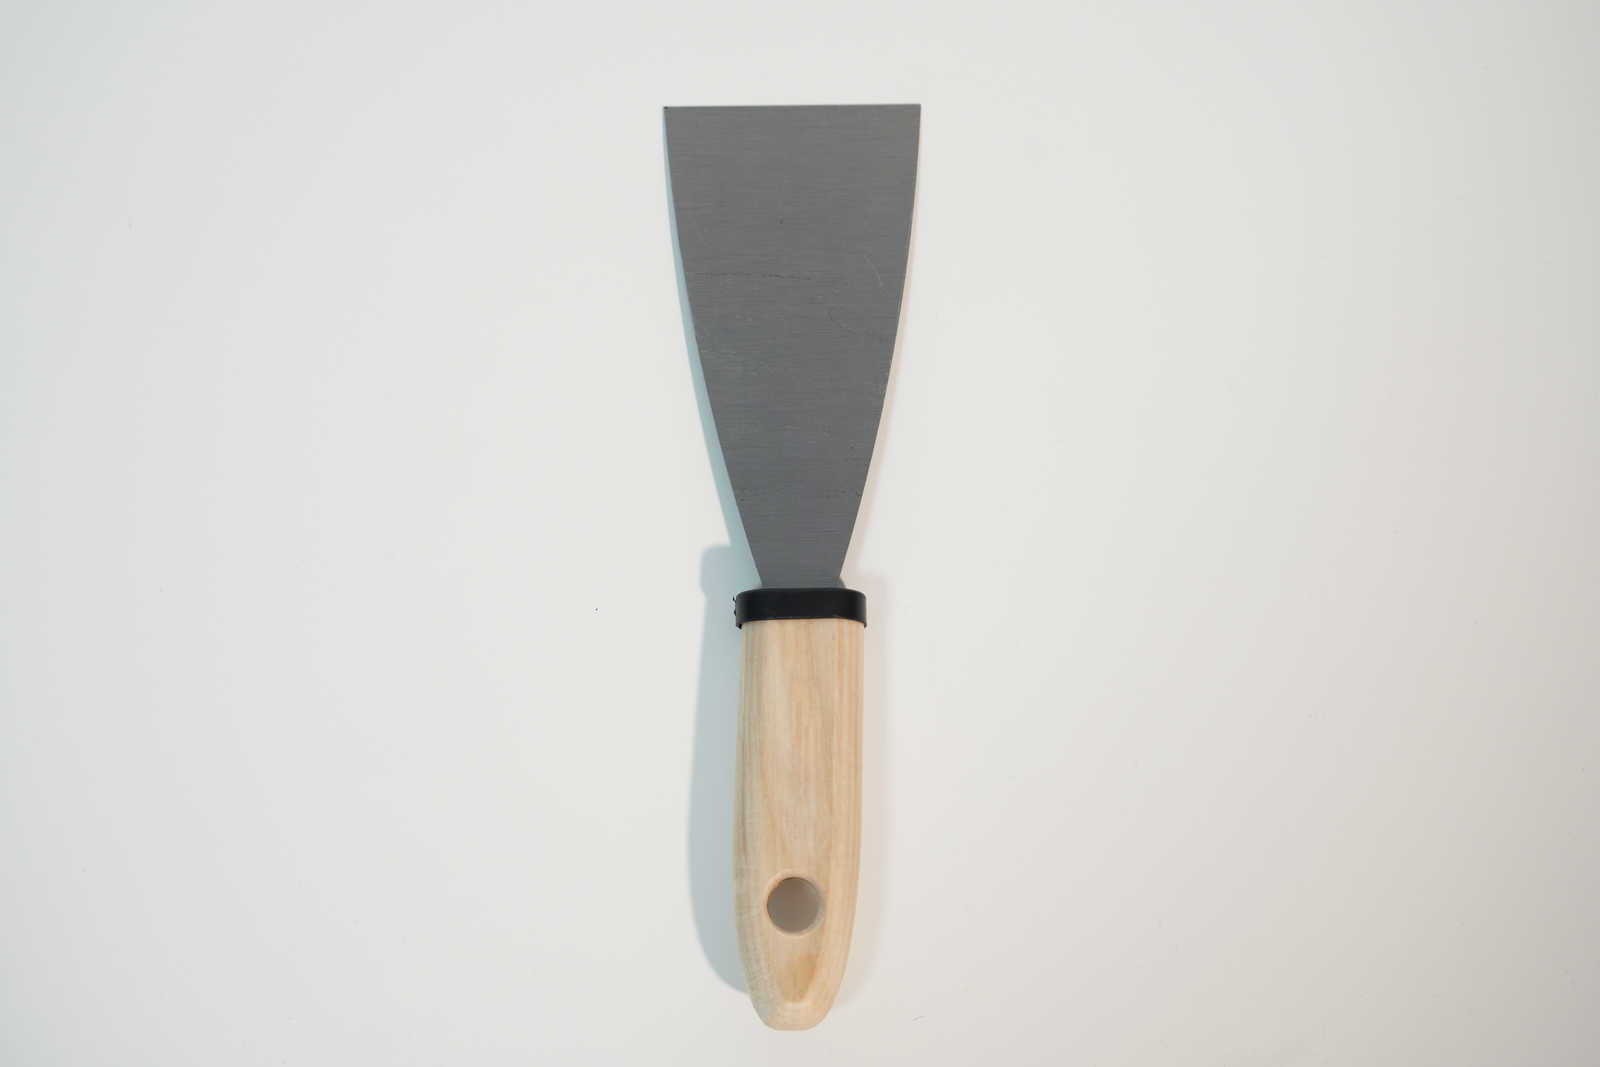             Espátula de pintor de 60 mm con hoja de acero flexible y mango de madera
        